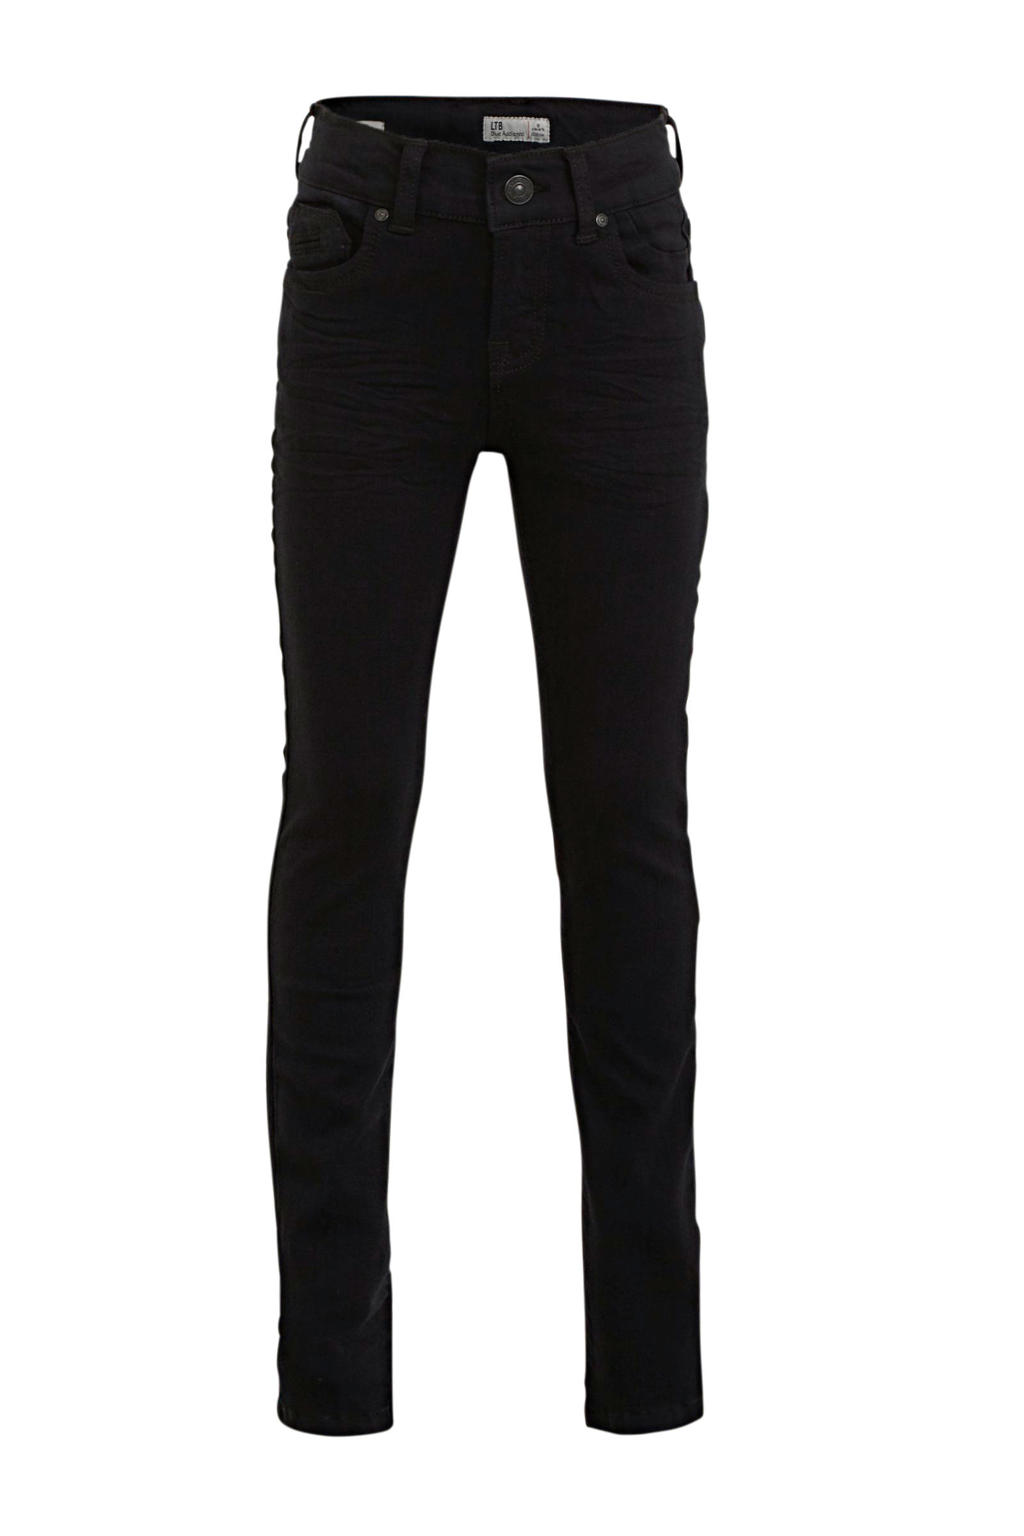 LTB skinny jeans Ravi black wash